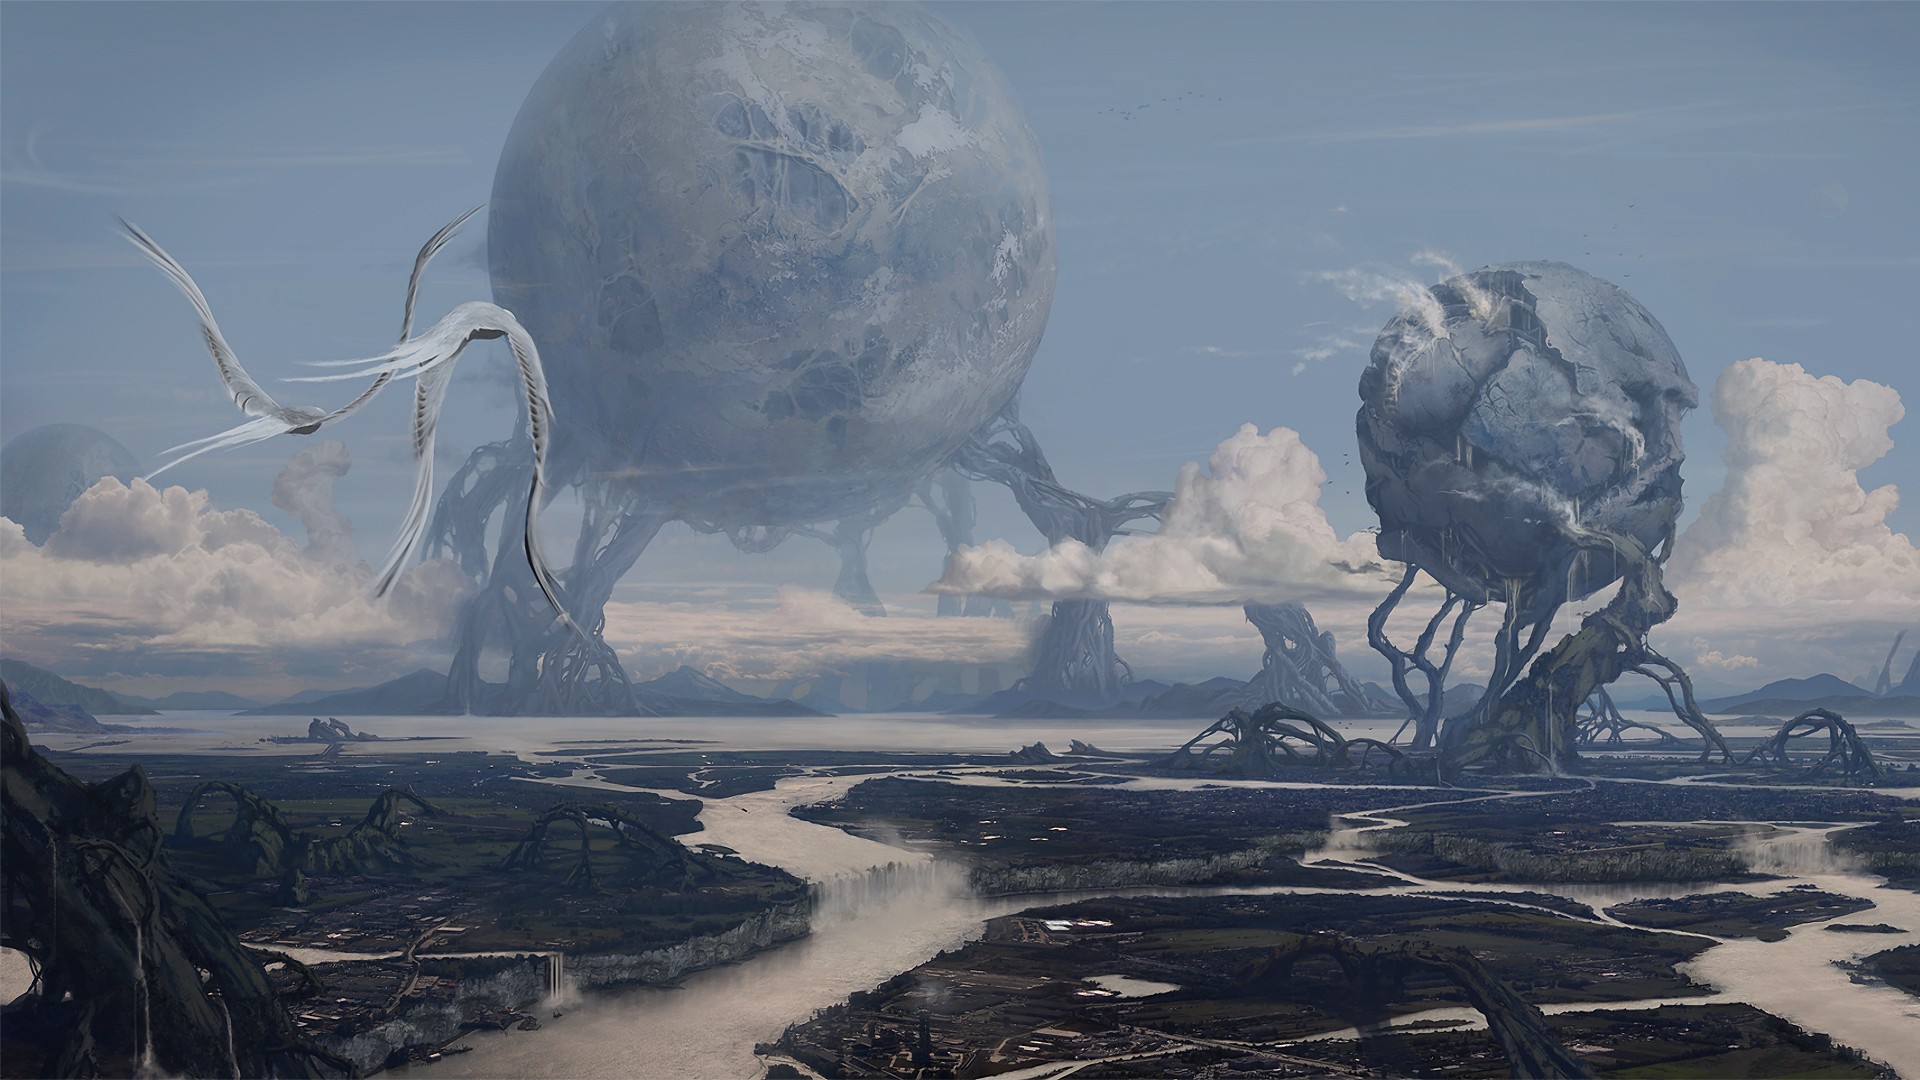 General 1920x1080 planet science fiction landscape